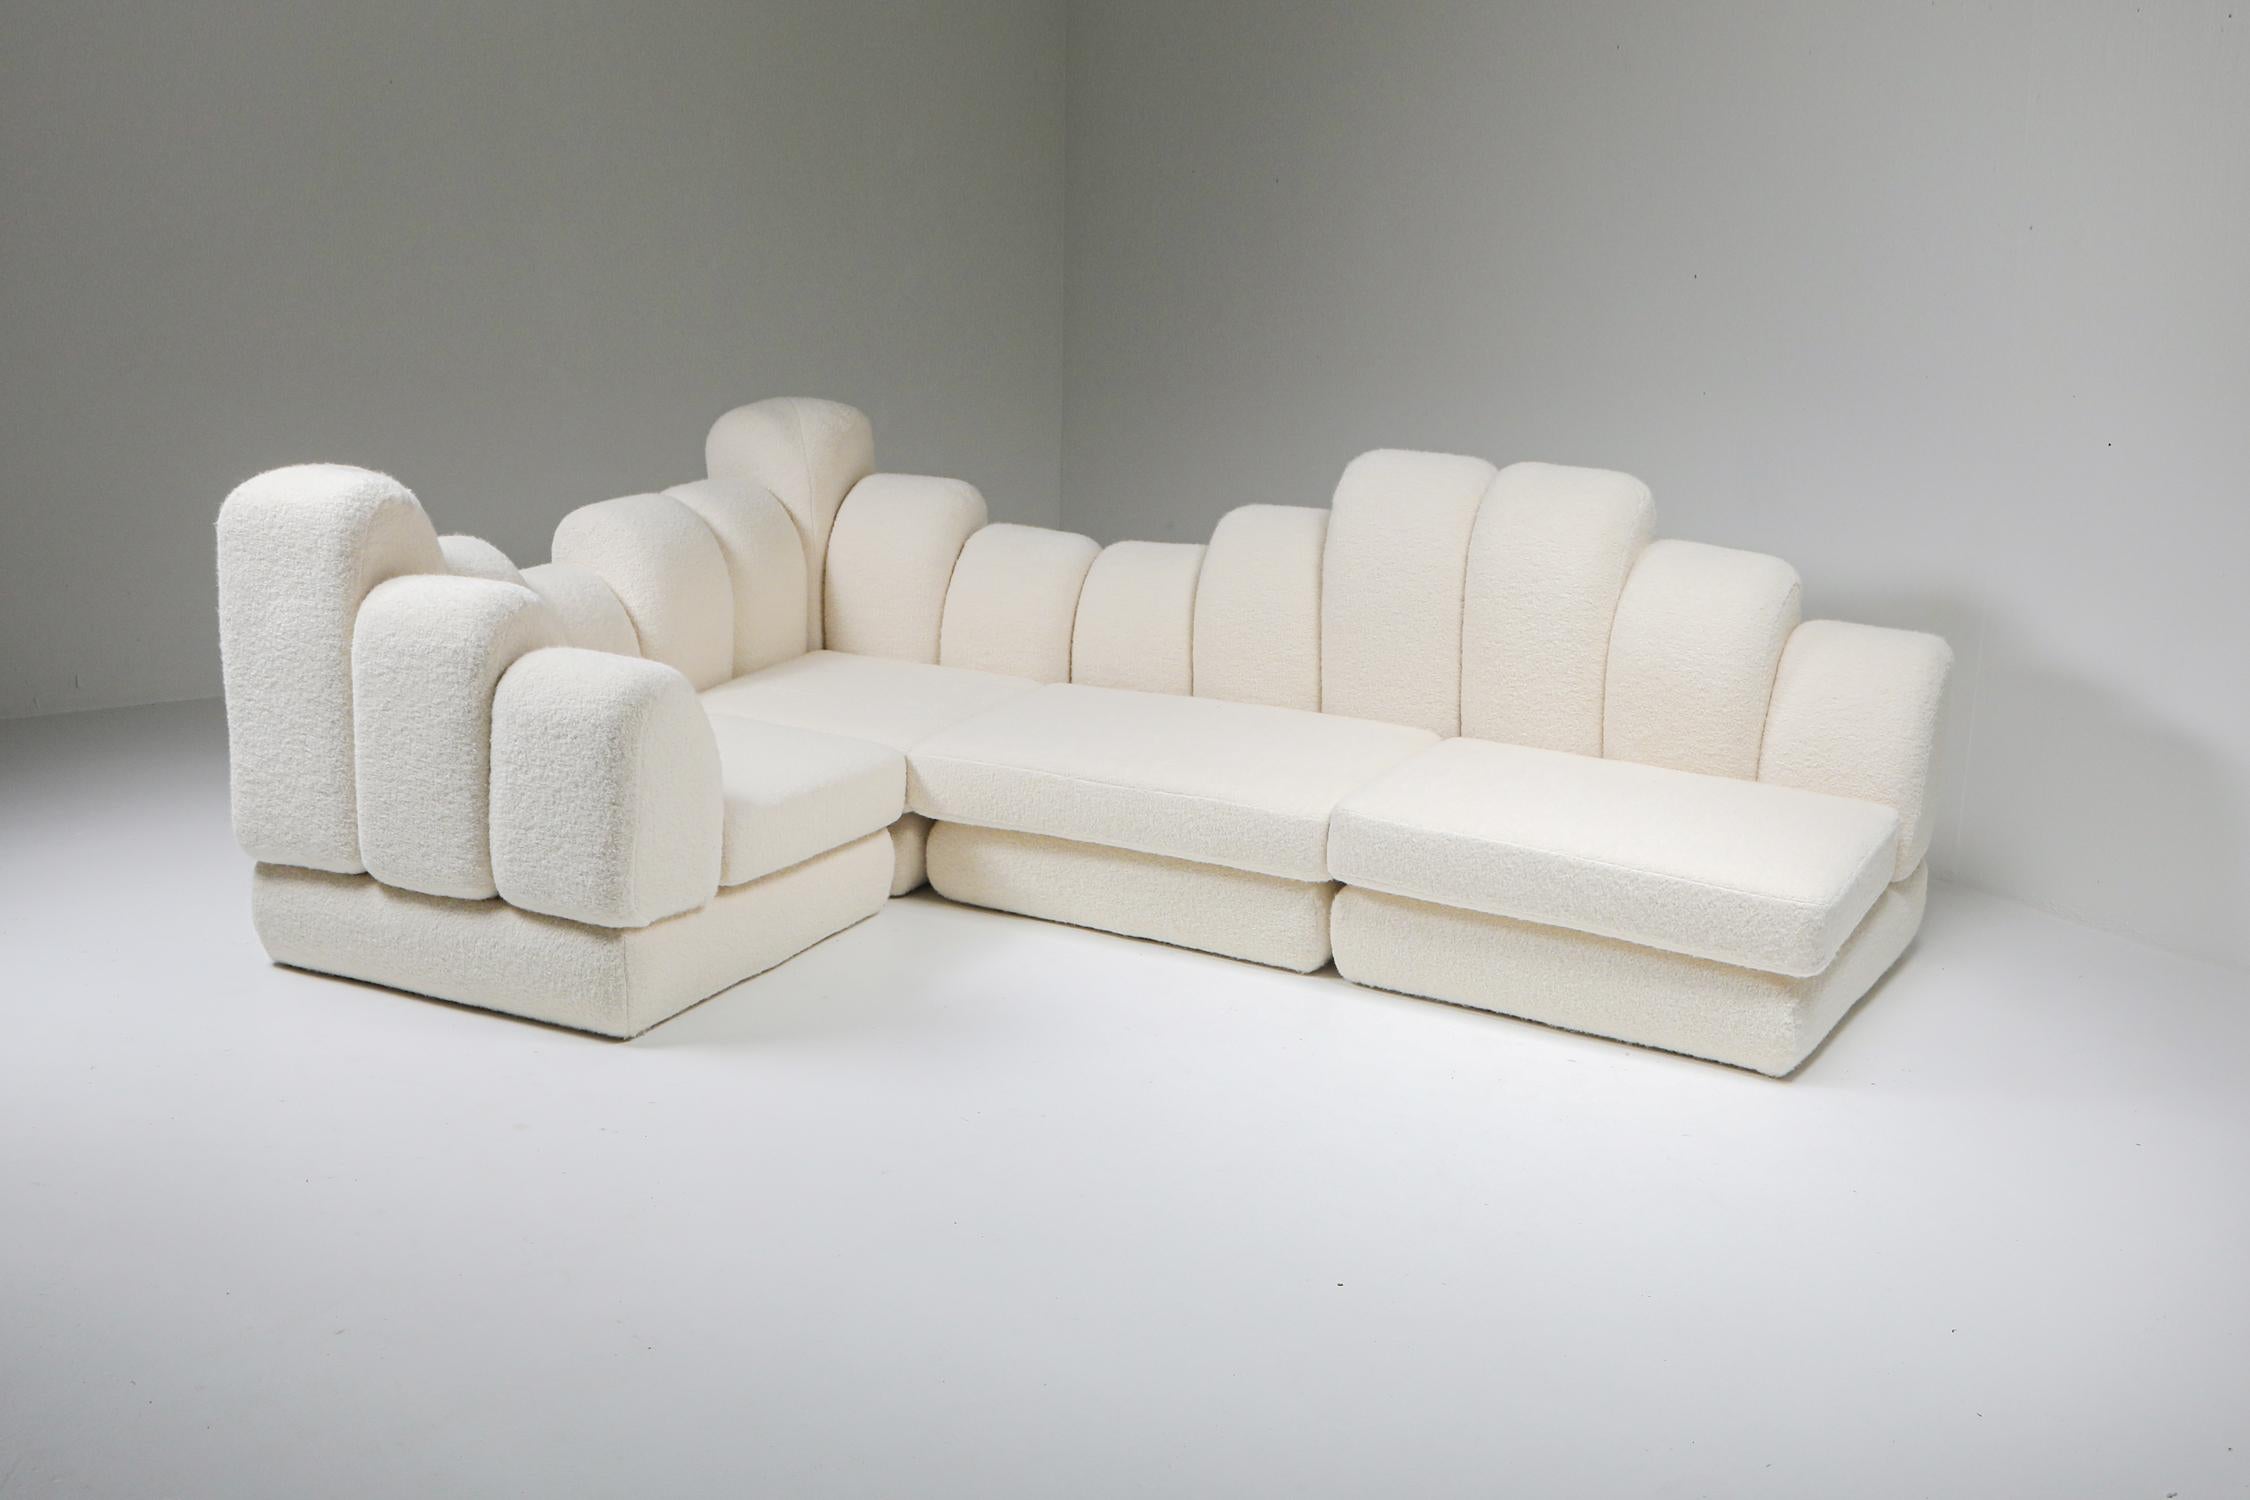 Post-Modern Hans Hopfer 'Dromadaire' Sectional Sofa in Pierre Frey Wool, Roche Bobois, 1974